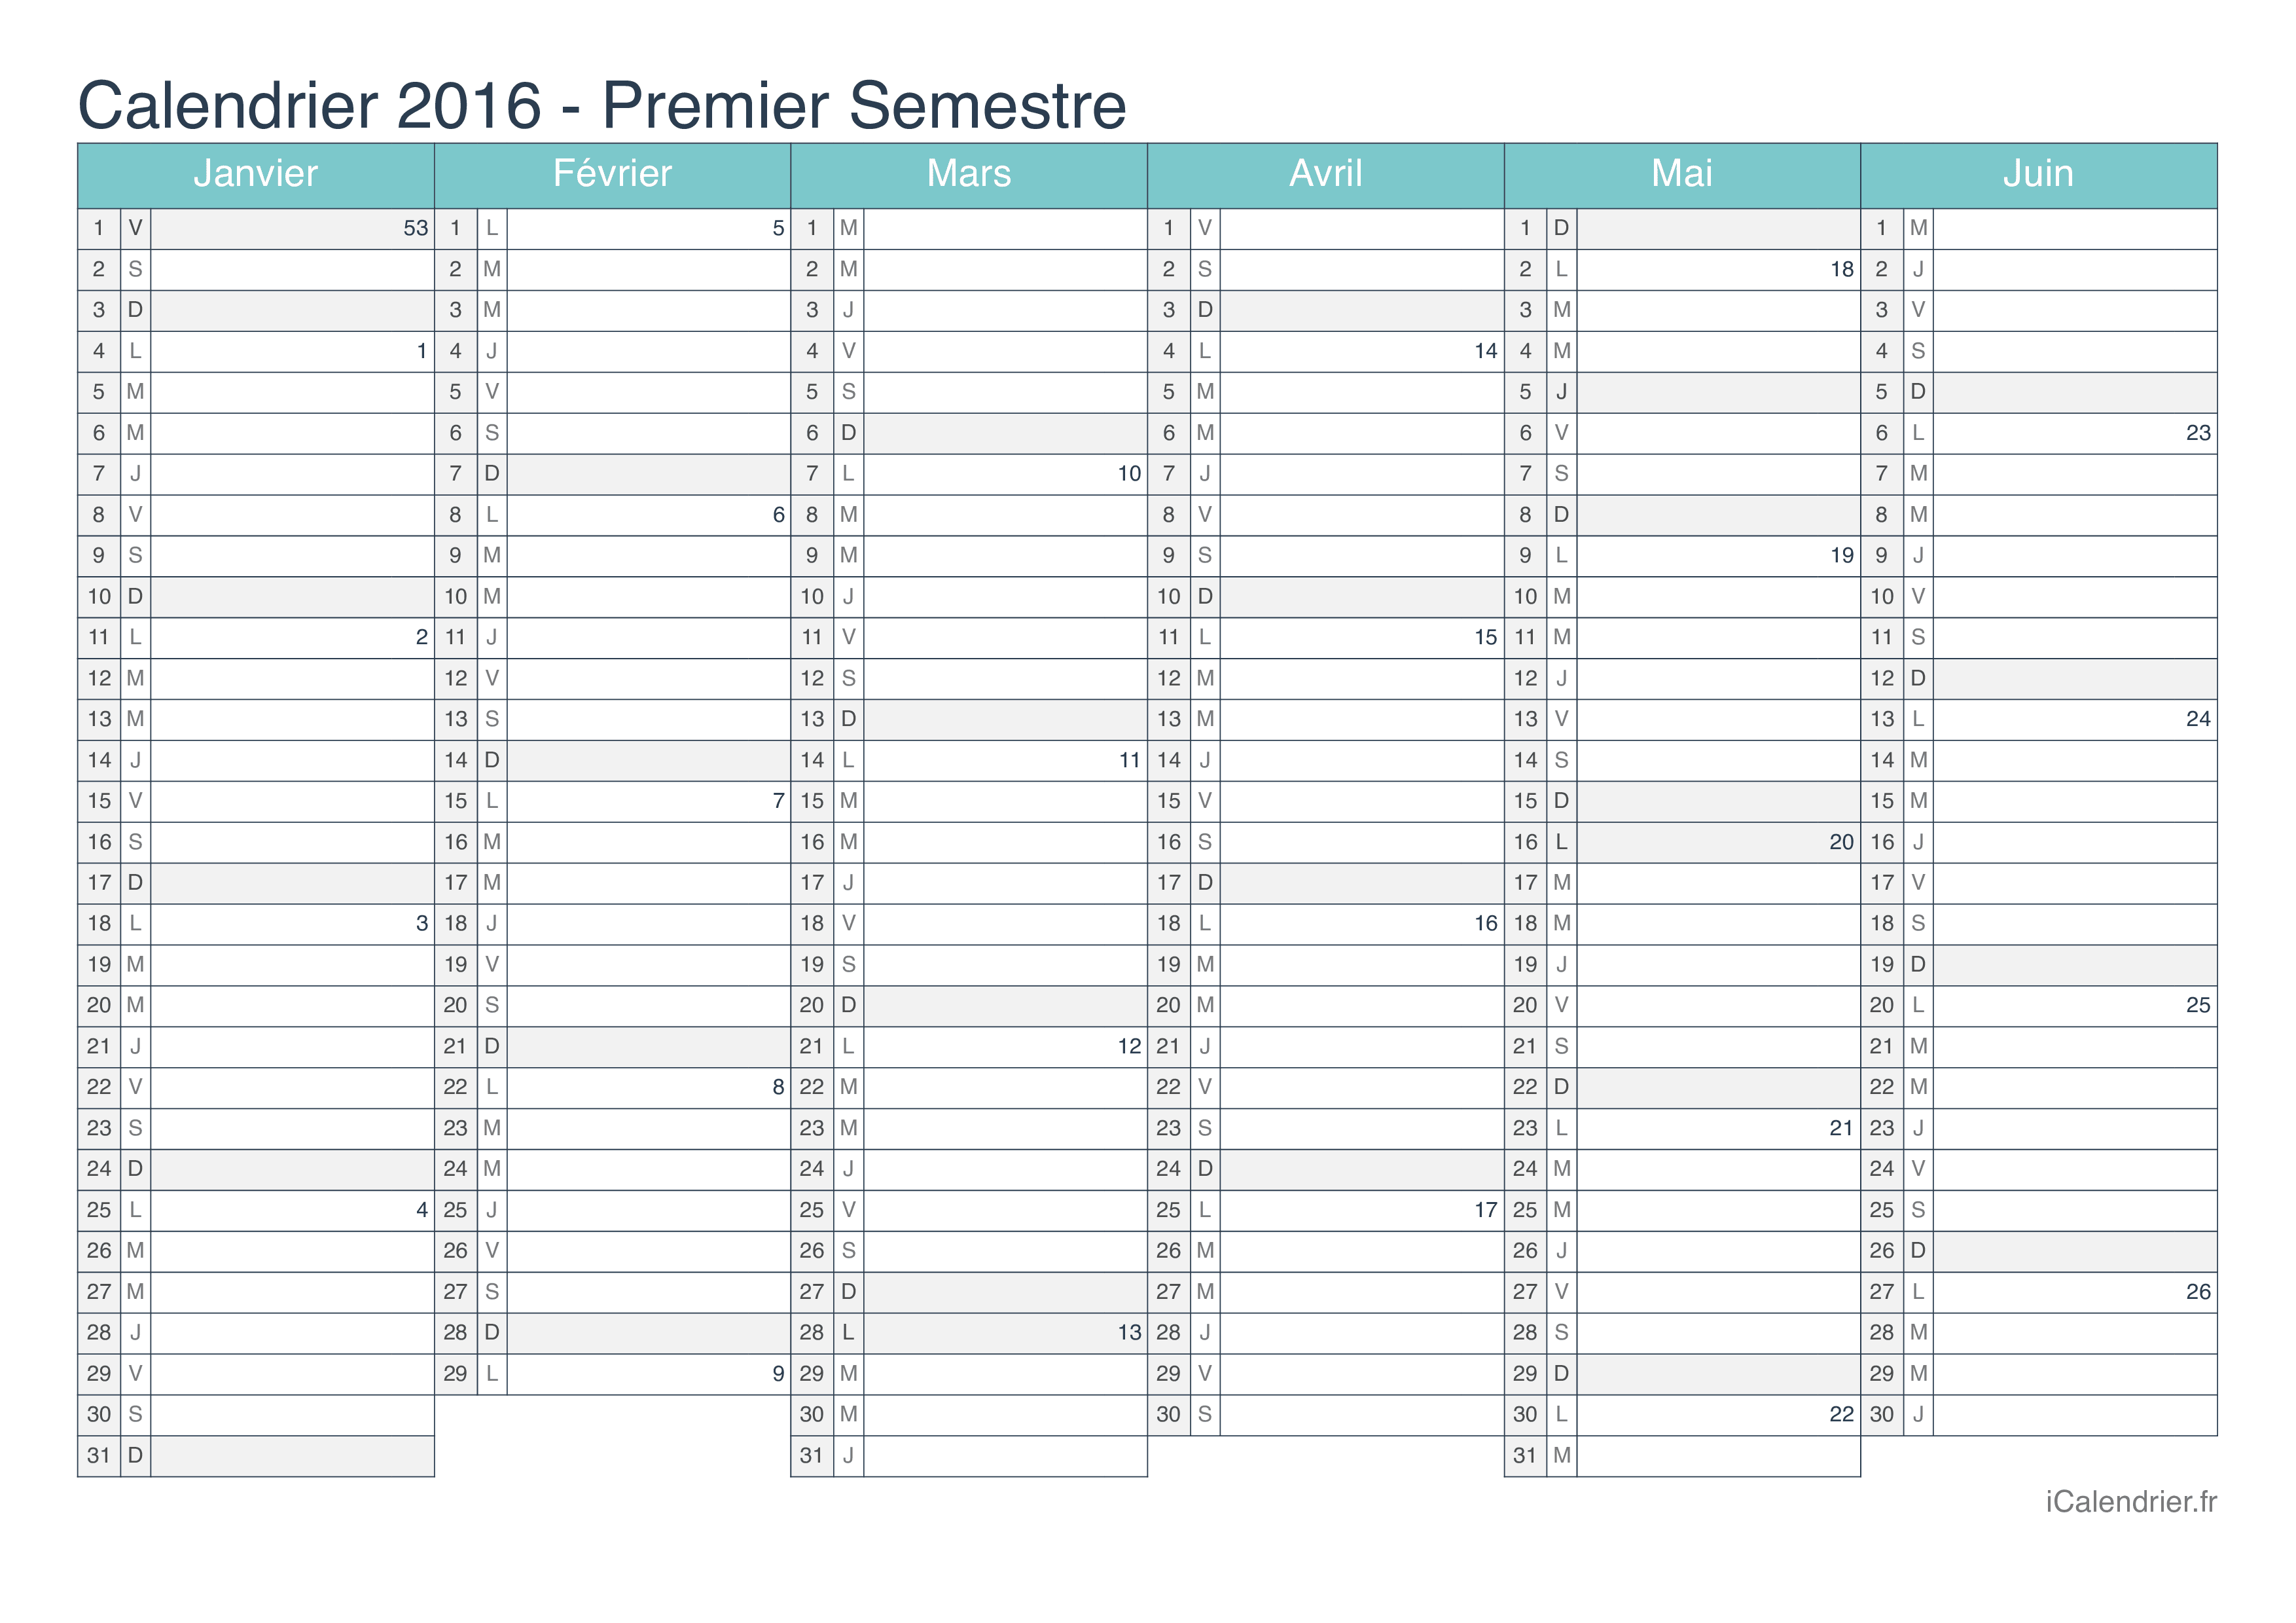 Calendrier par semestre avec numéros des semaines 2016 - Turquoise